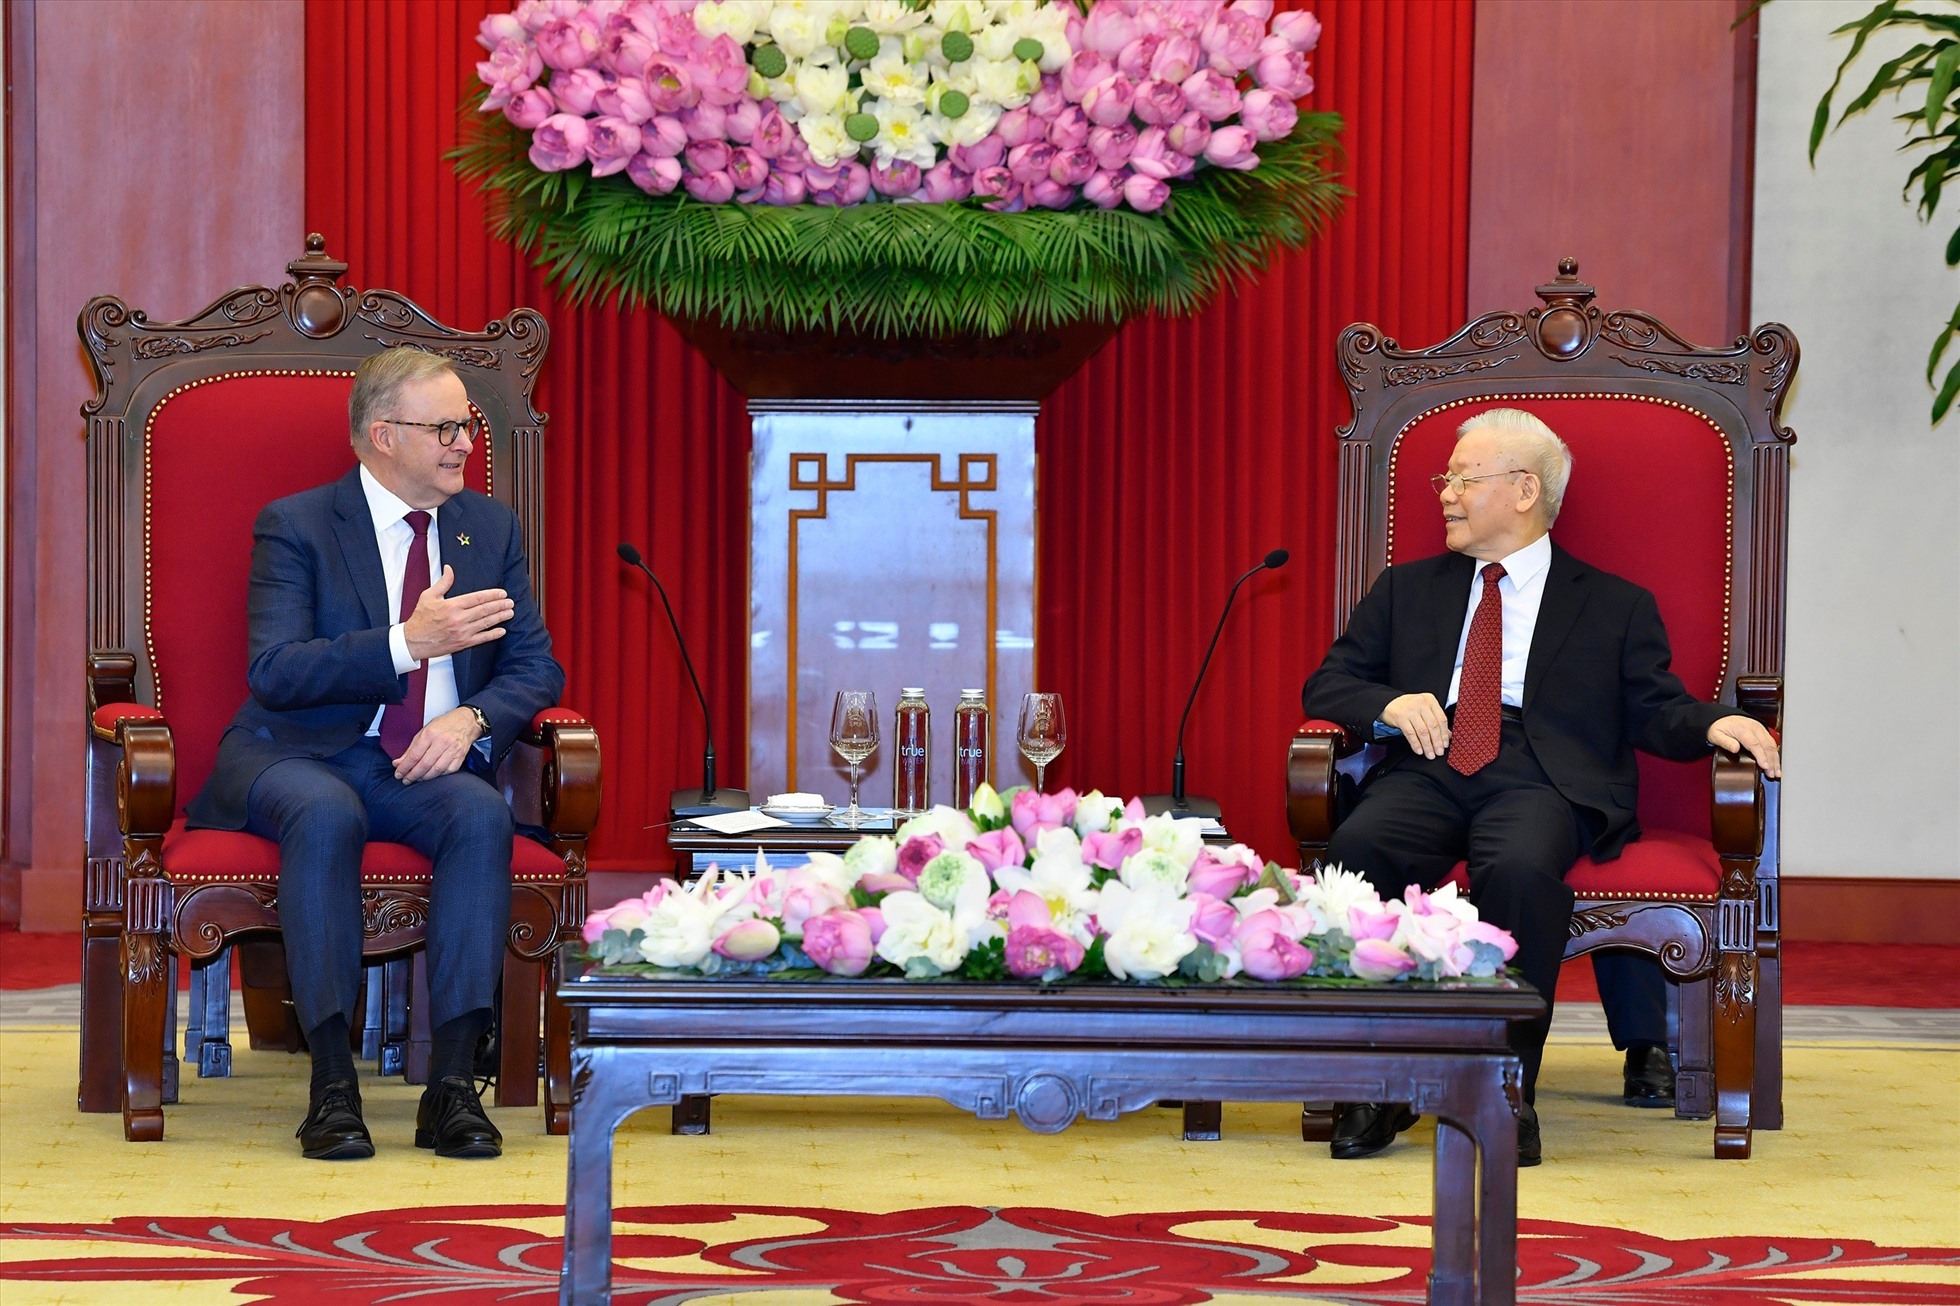 Tổng Bí thư Nguyễn Phú Trọng hoan nghênh ngài Anthony Albanese lần đầu tiên thăm chính thức Việt Nam trên cương vị Thủ tướng Australia. Ảnh: Hải Nguyễn